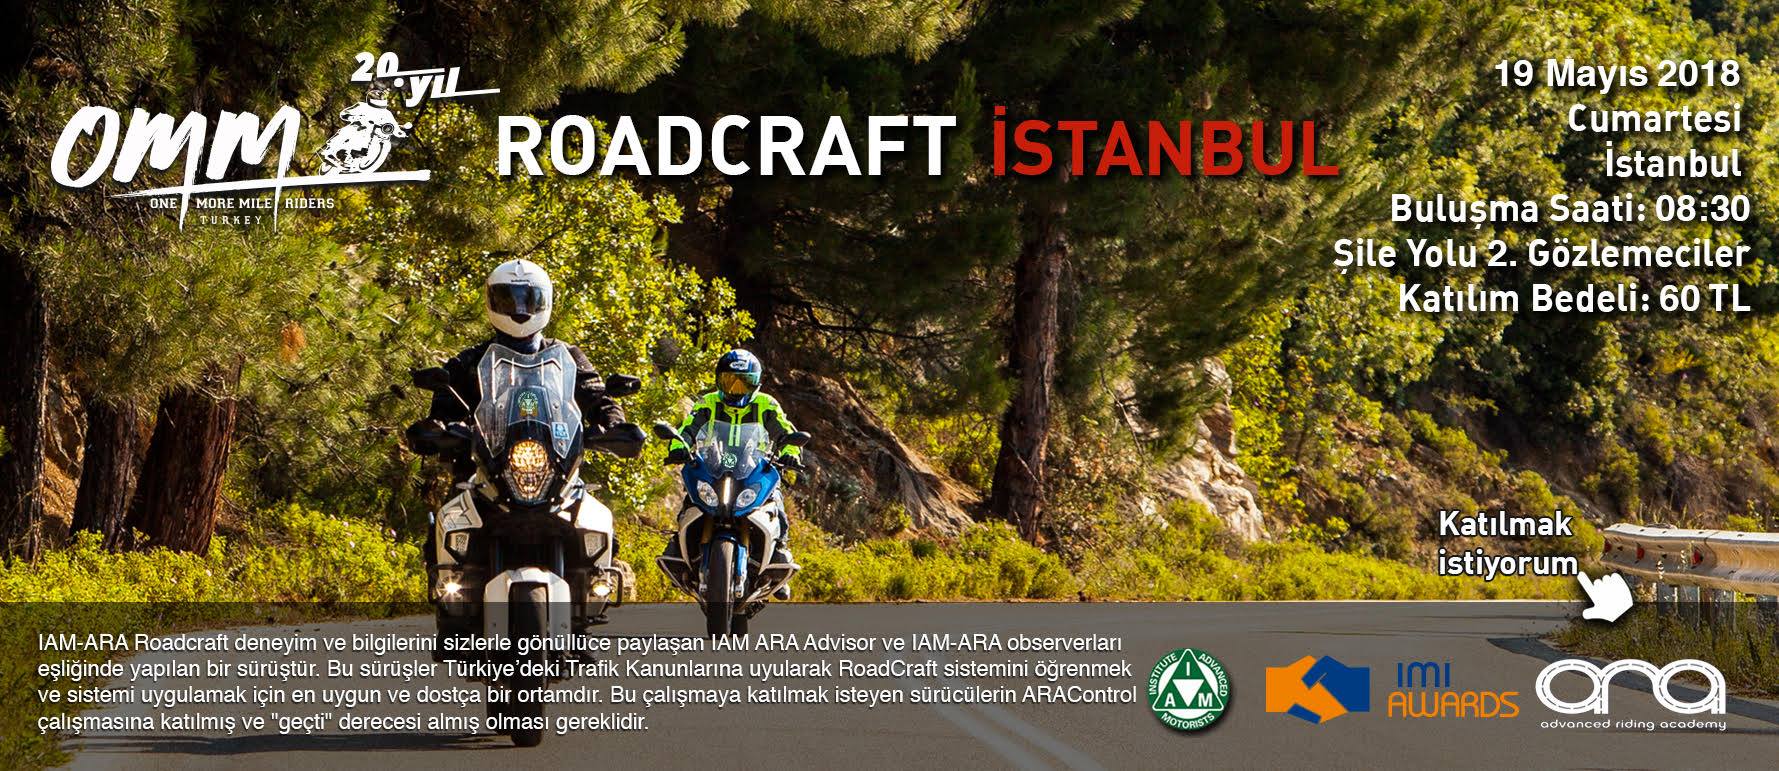 OMM Roadcraft İstanbul 19 Mayıs 2018